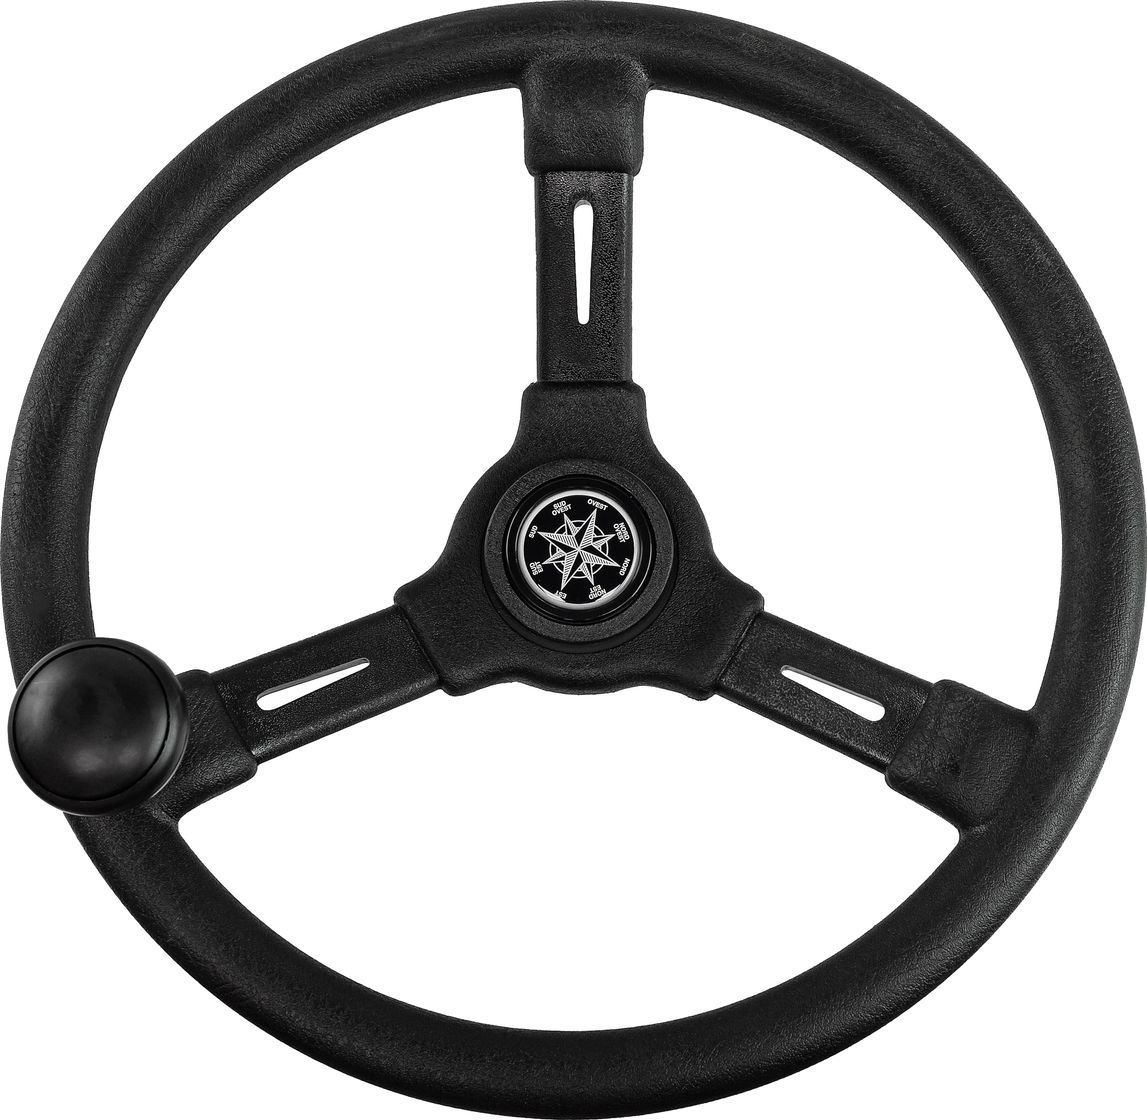 Рулевое колесо RIVIERA черный обод и спицы д. 350 мм со спинером VN8250-01 рулевое колесо обод стальные спицы диаметр 340 мм 73053 01